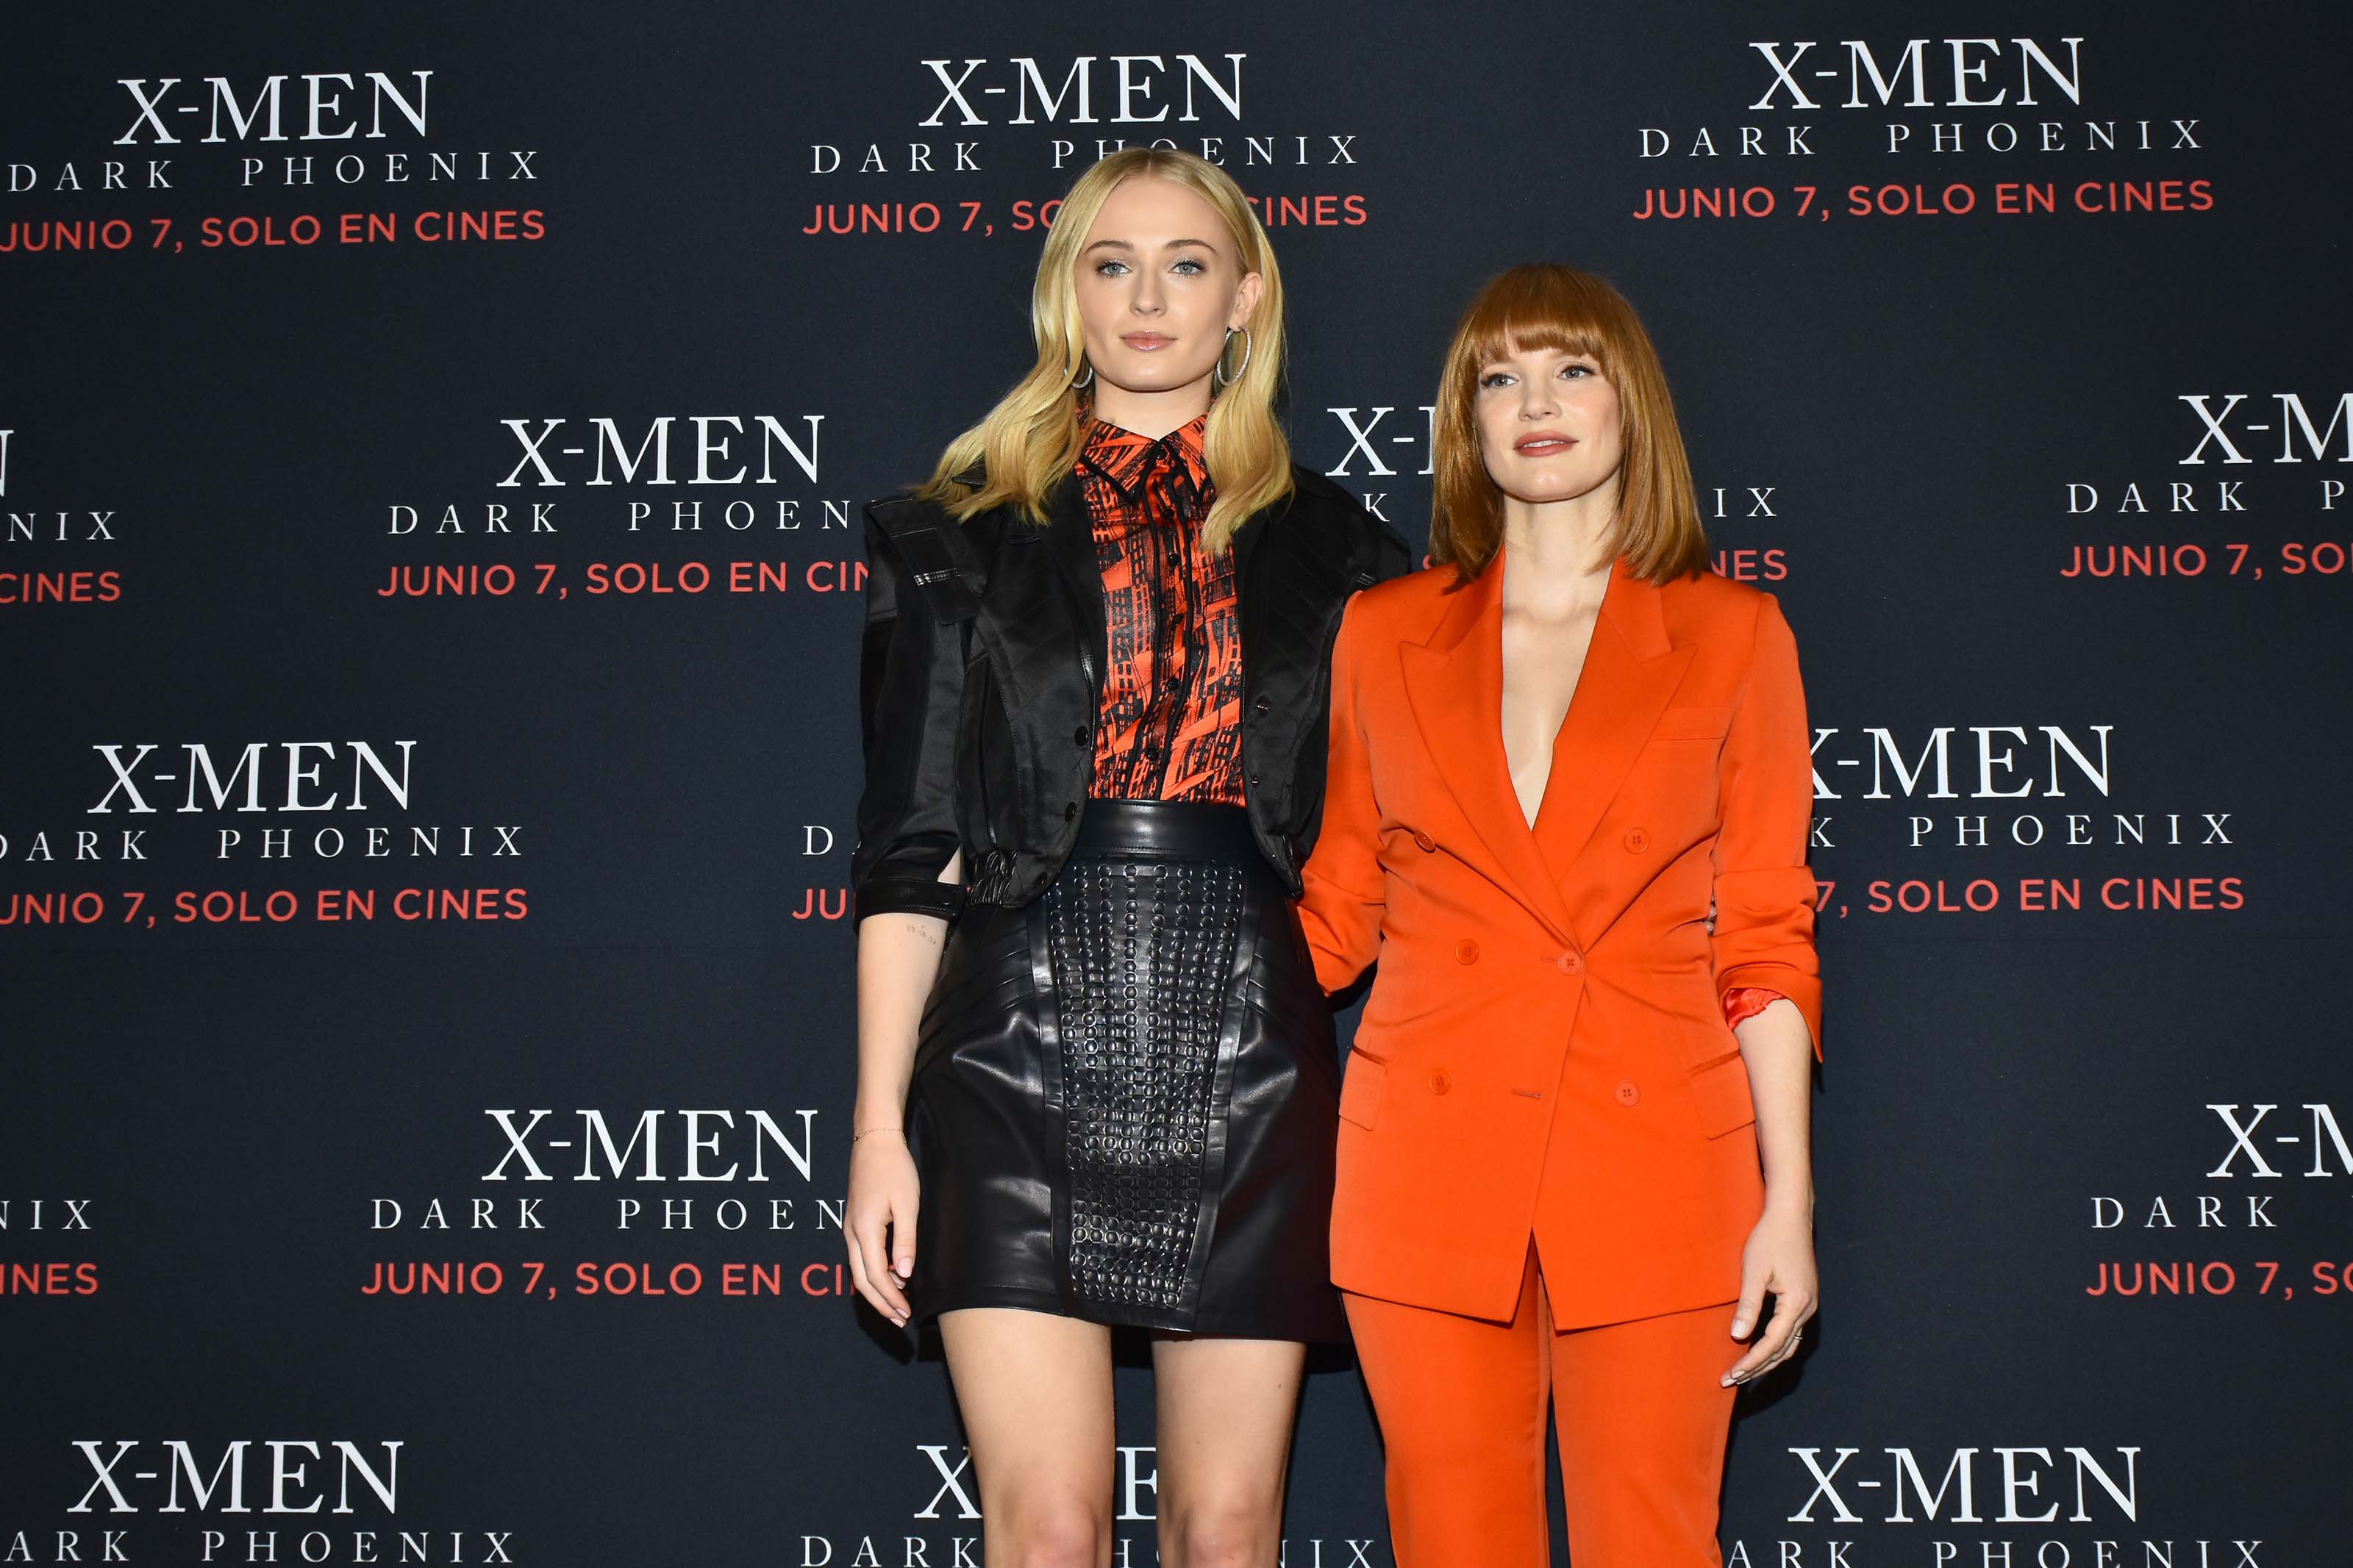 Sophie Turner attends X-Men Dark Phoenix Film